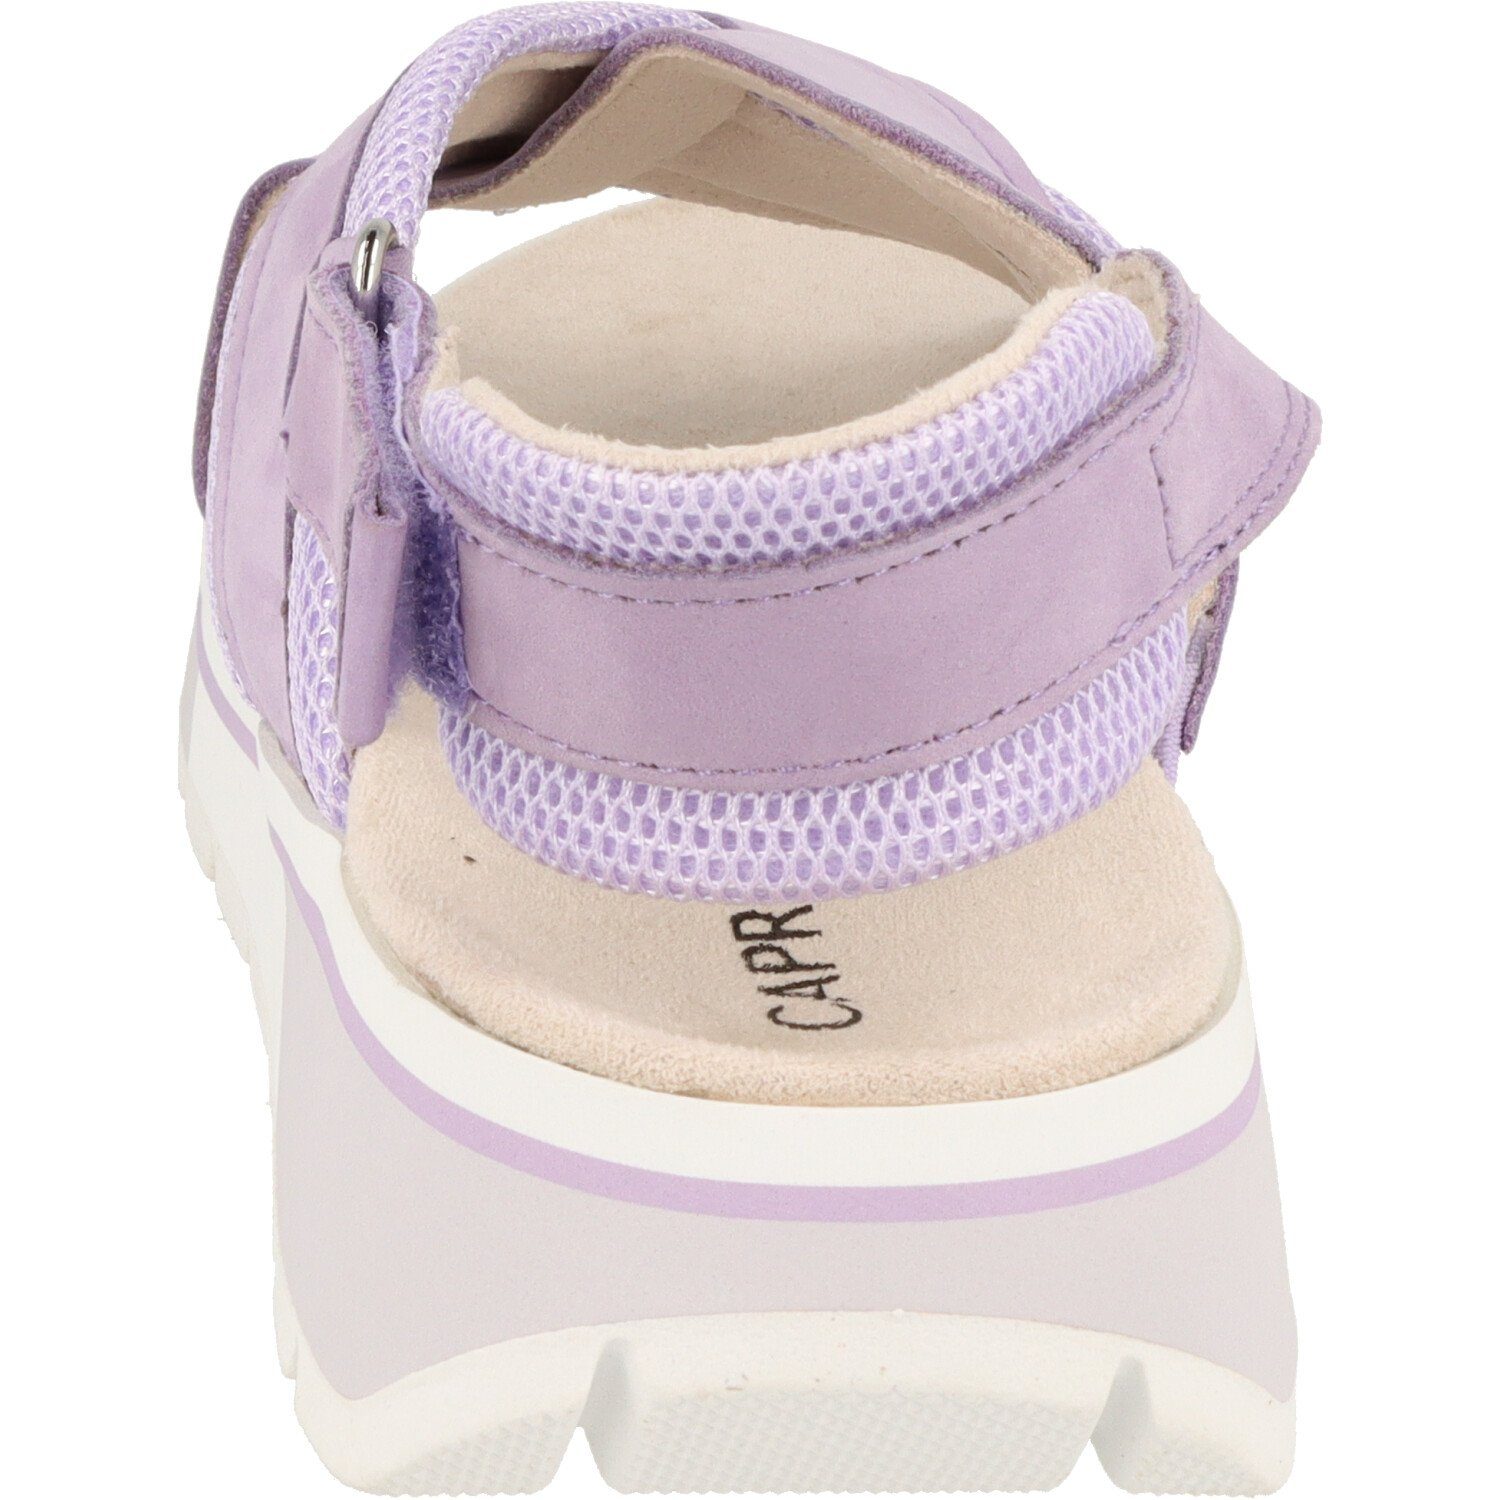 Caprice Damen Schuhe Flache Sandale 9-28704-20 Climotion Klett Purple Sandale